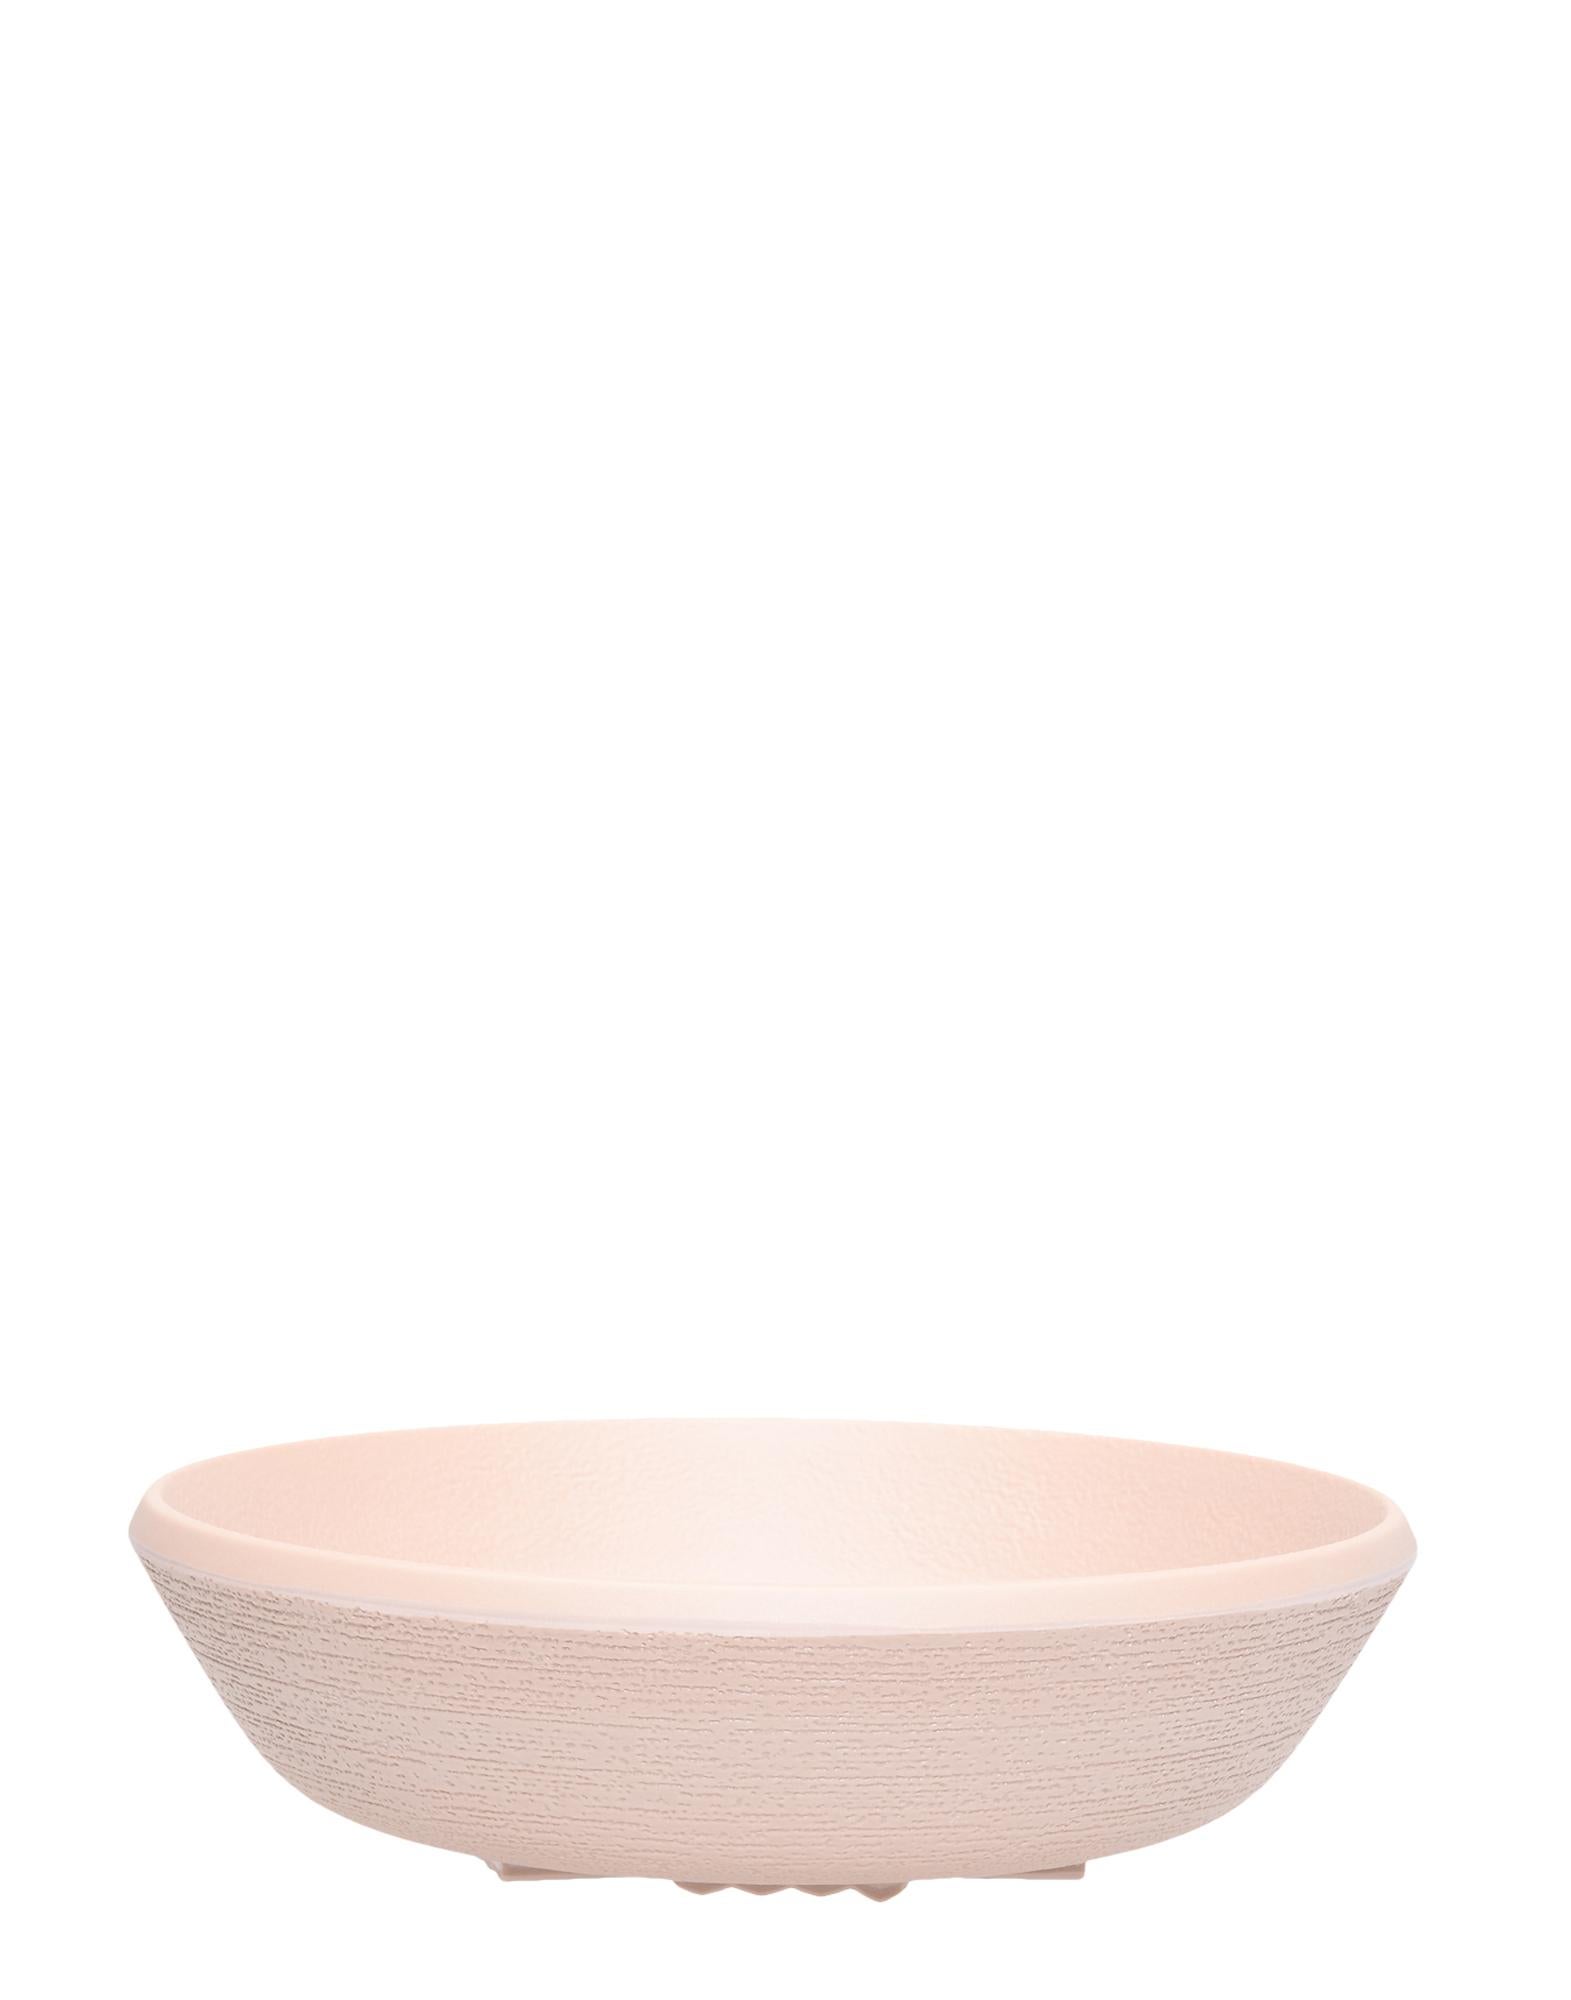 La collection de vaisselle Trama est un service complet inspiré de la poterie japonaise, avec ses textures caractéristiques et très raffinées, ses couleurs naturelles et ses finitions mates. Semblables à la poterie associée aux maisons de campagne,